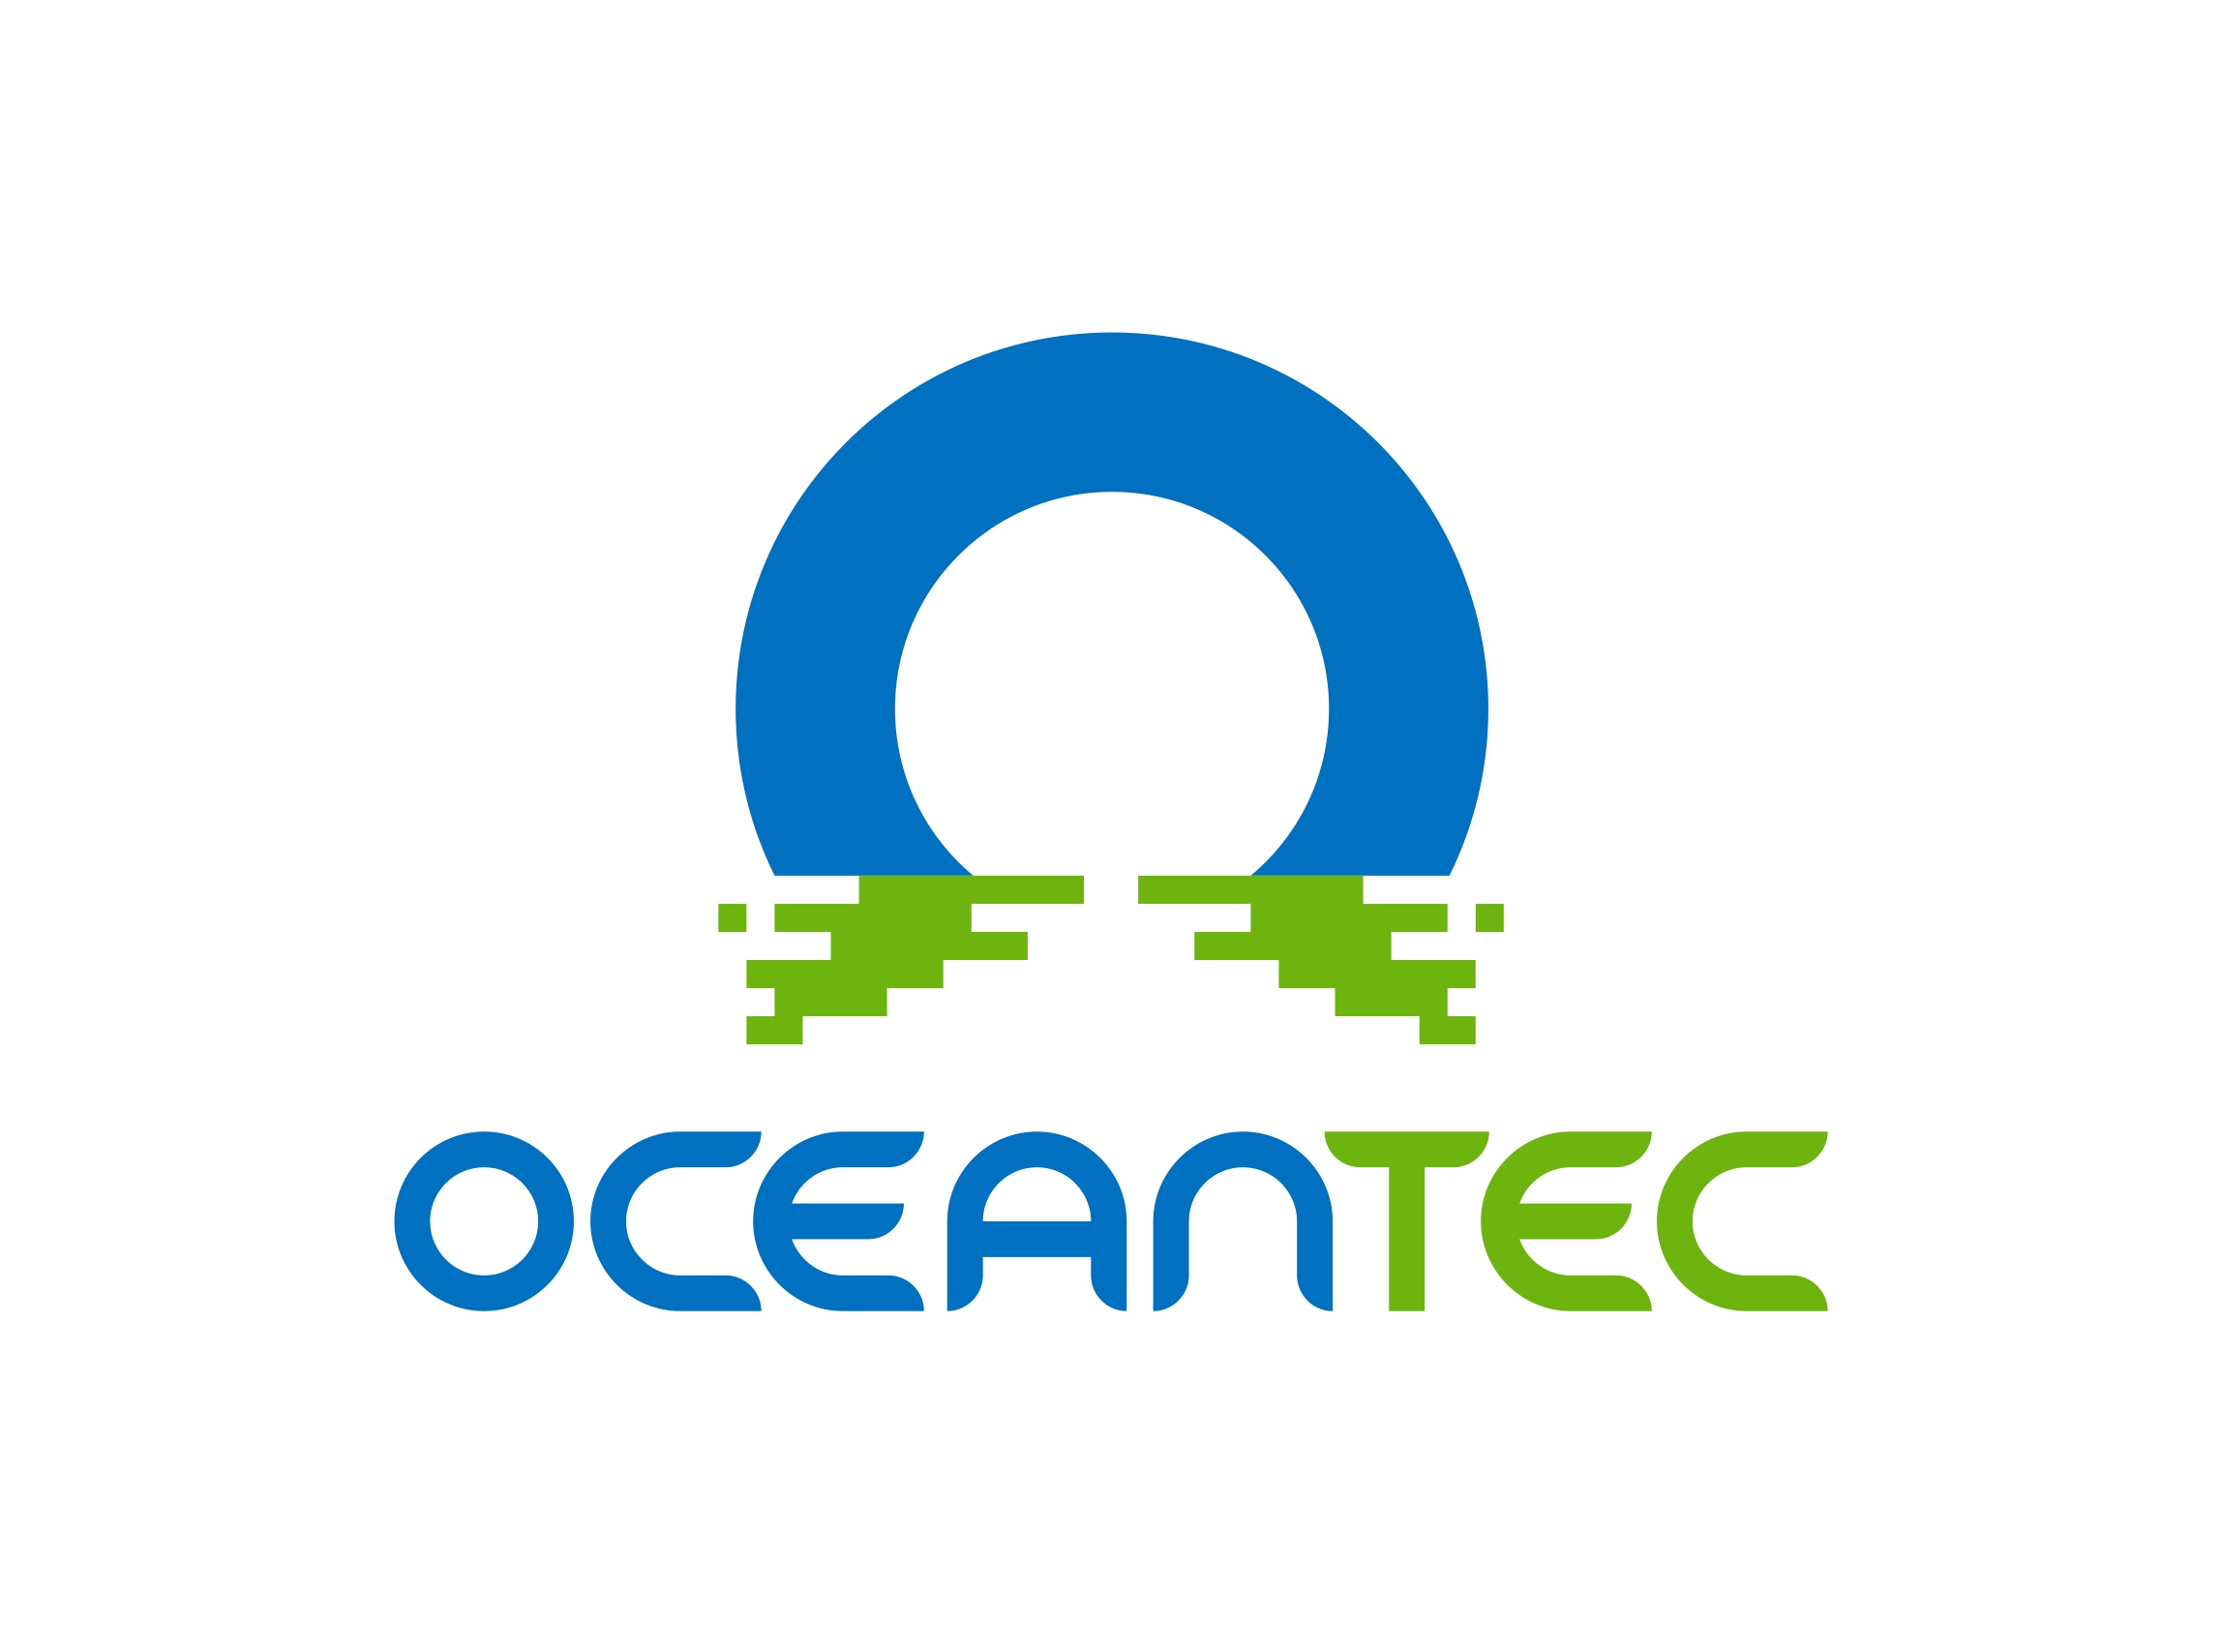 OCEAN TEC products